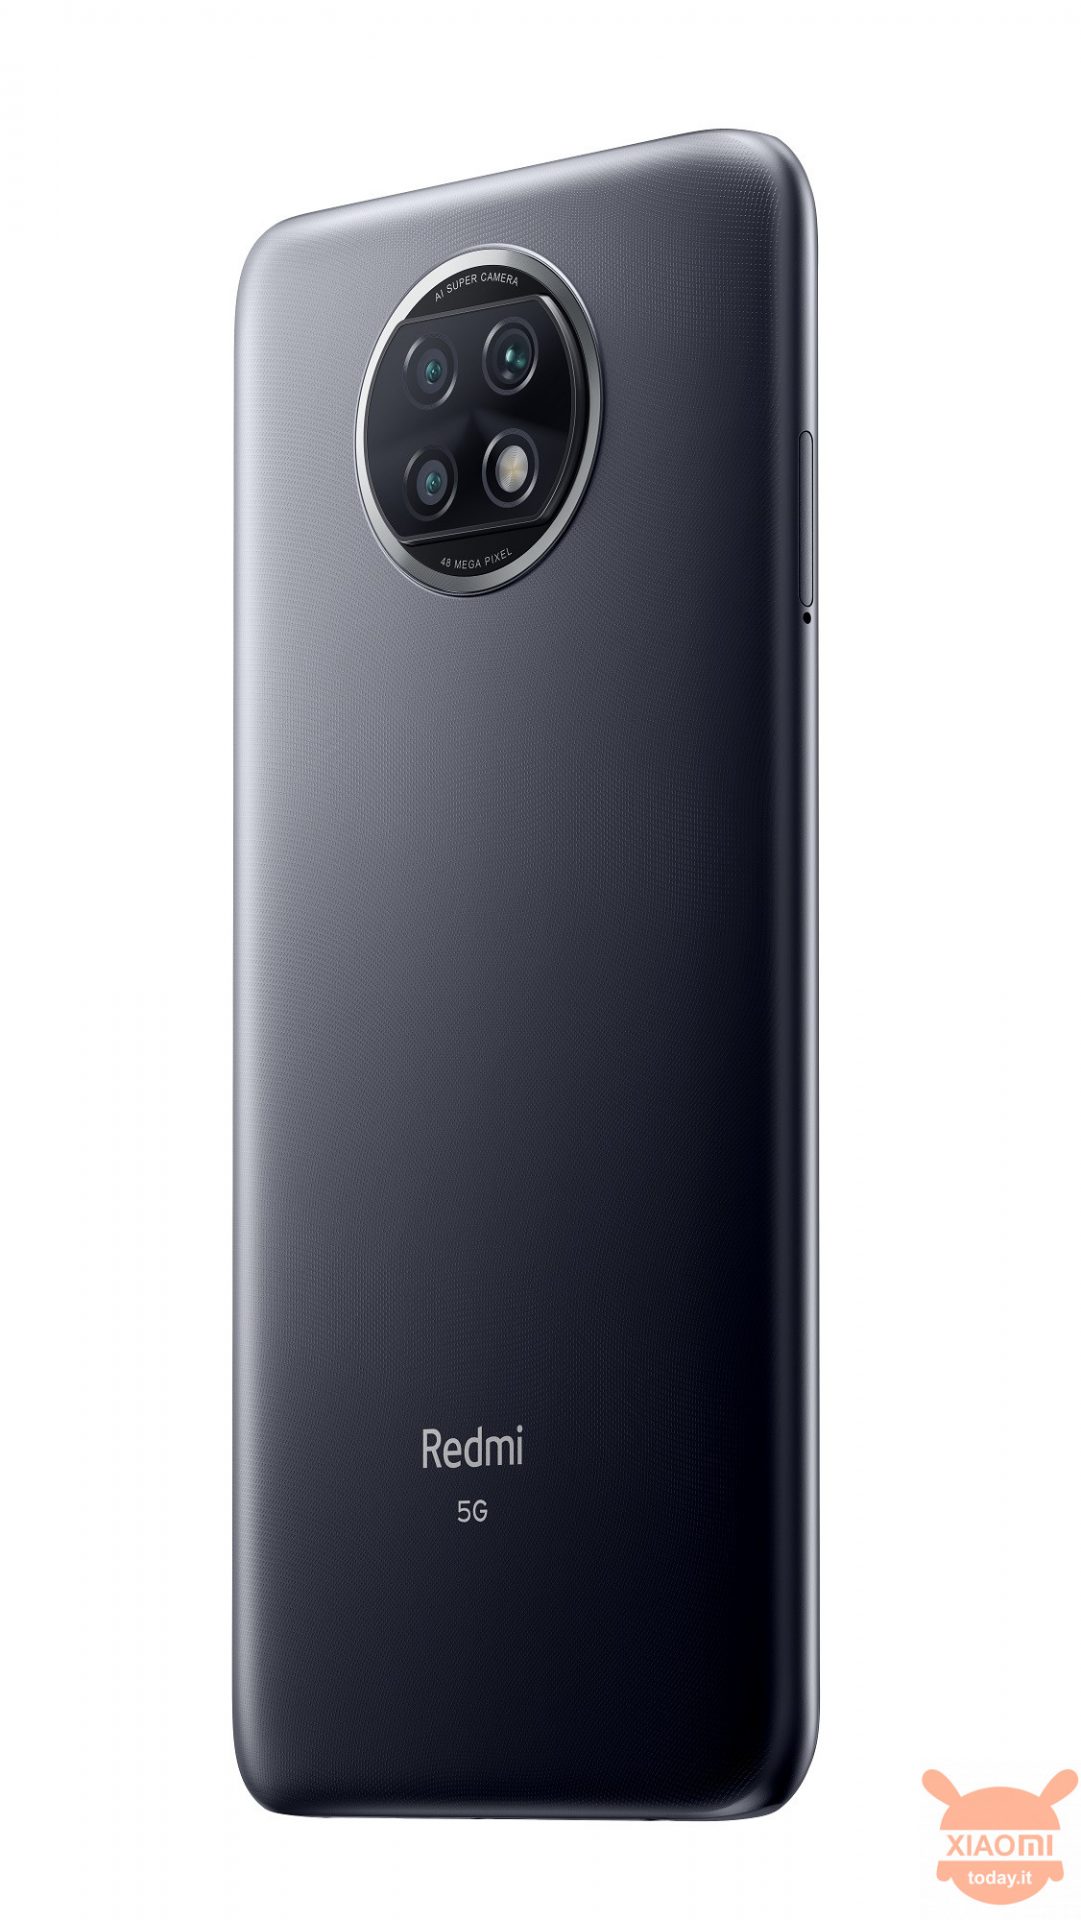 Redmi Note 9T 5G italia specifiche prezzi